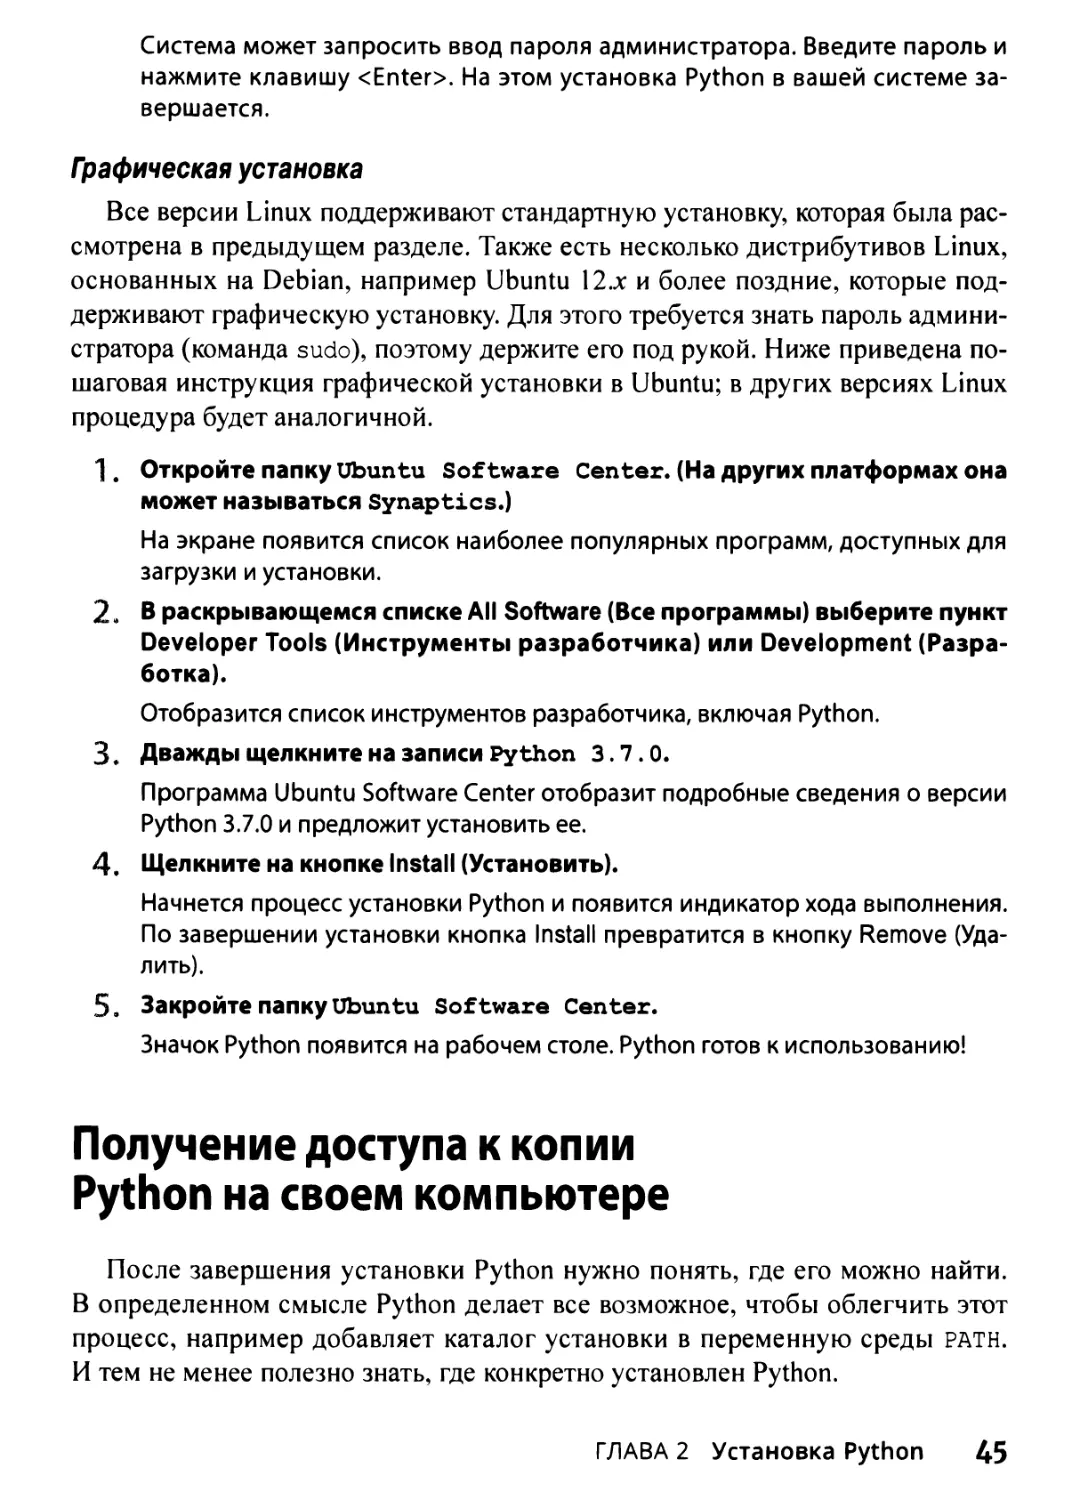 Получение доступа к копии Python на своем компьютере